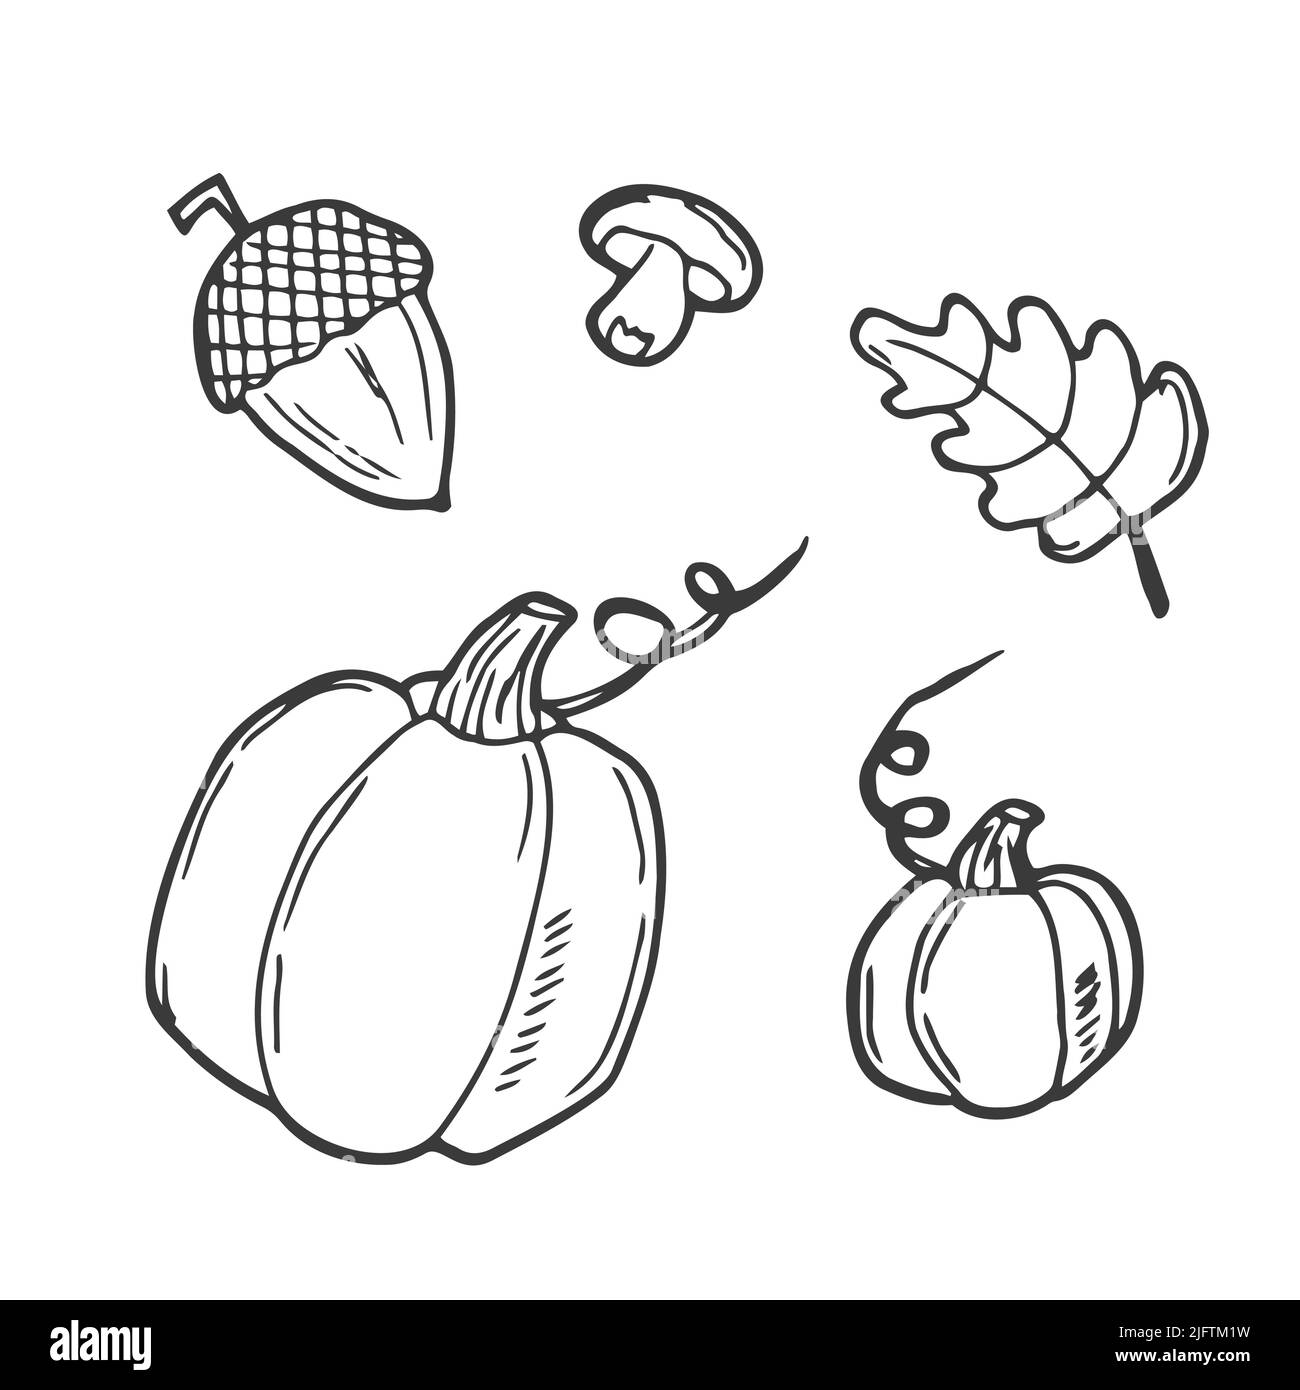 Herbst-Vektorkollektion. Skizzieren Sie Set von Herbst Vektor-Objekte: Kürbis, Blätter, Becher, Zimt, Stück Kuchen, Eicheln, Pilze, Apfel mit Karamell. Gut Stock Vektor